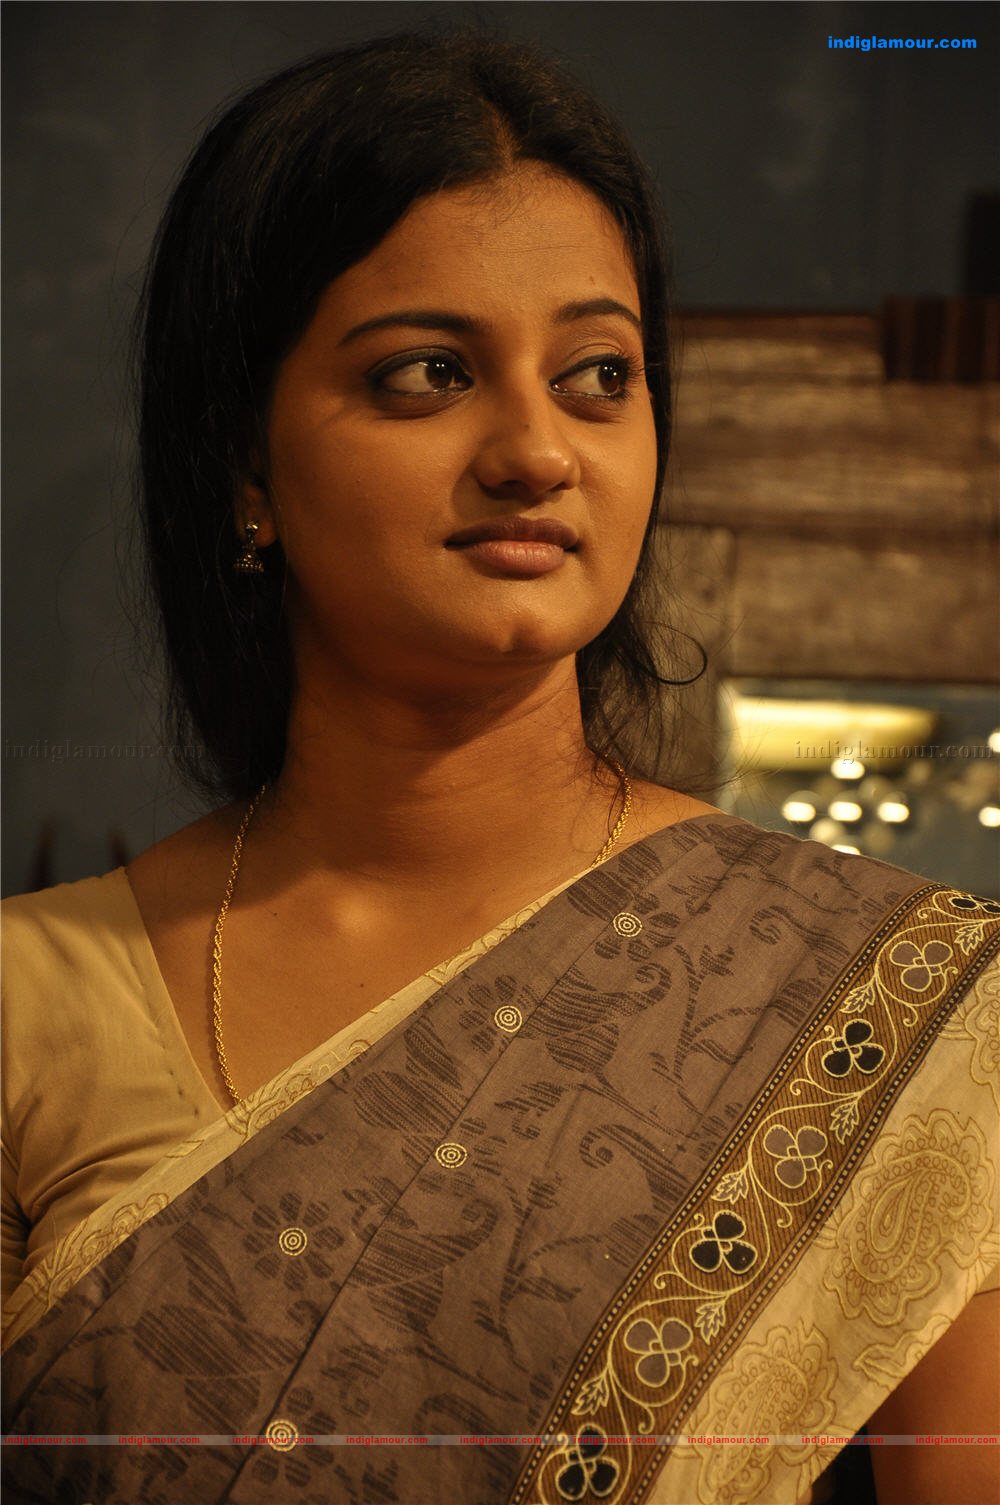 Malayalam Actress <b>Priyanka Nair</b> photo - Priyanka-Nair_4006